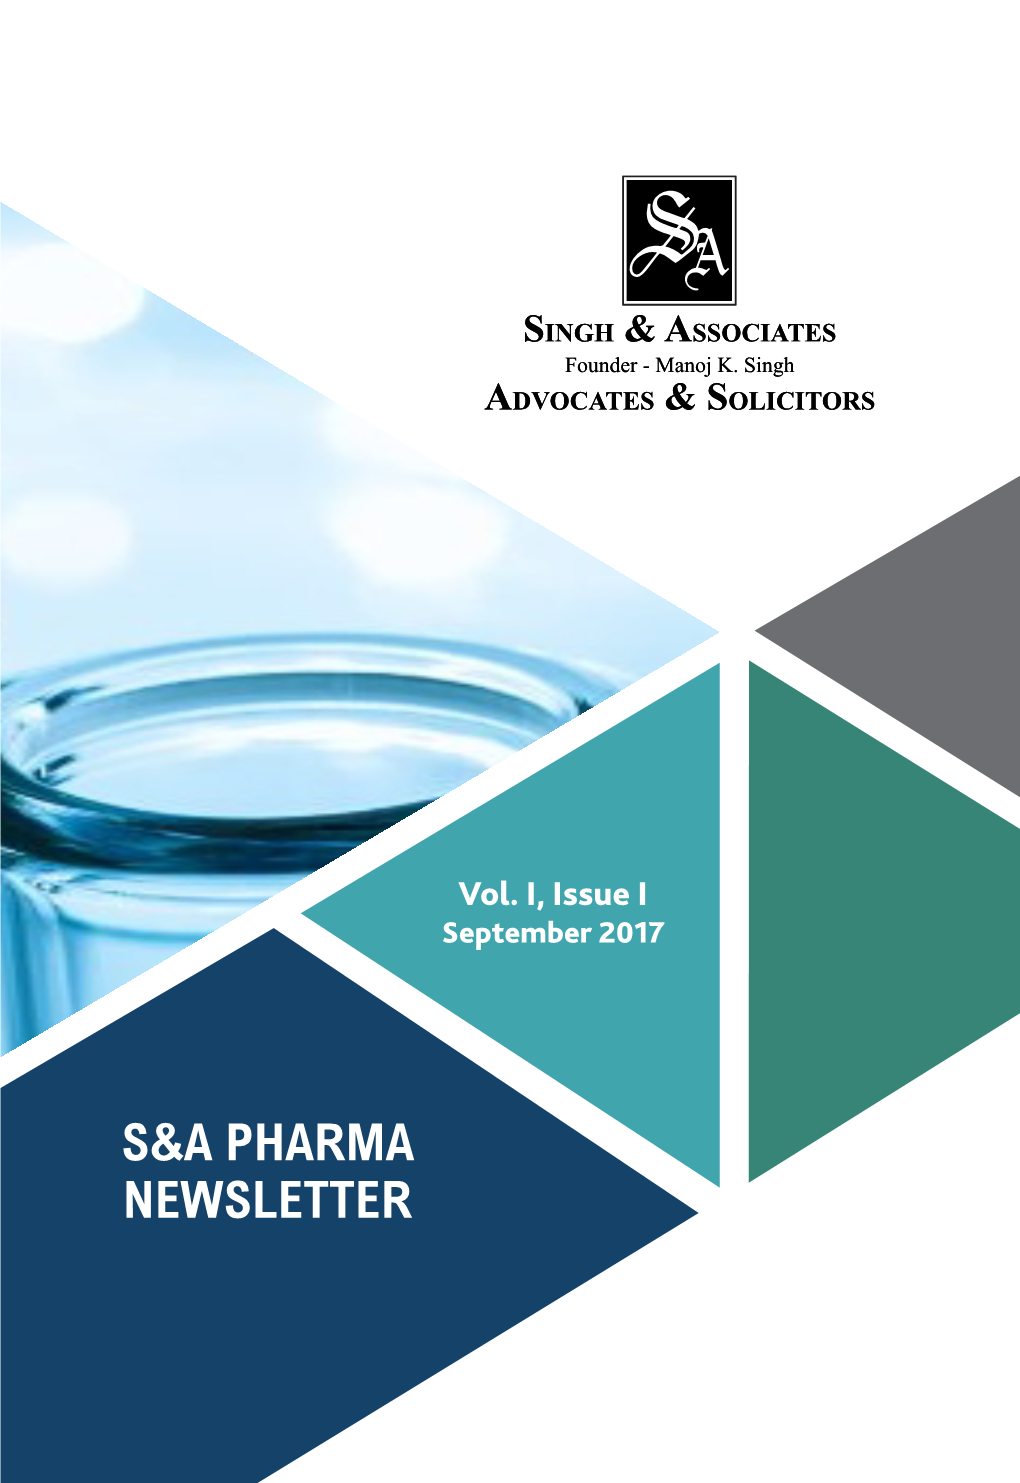 S&A Pharma Newsletter